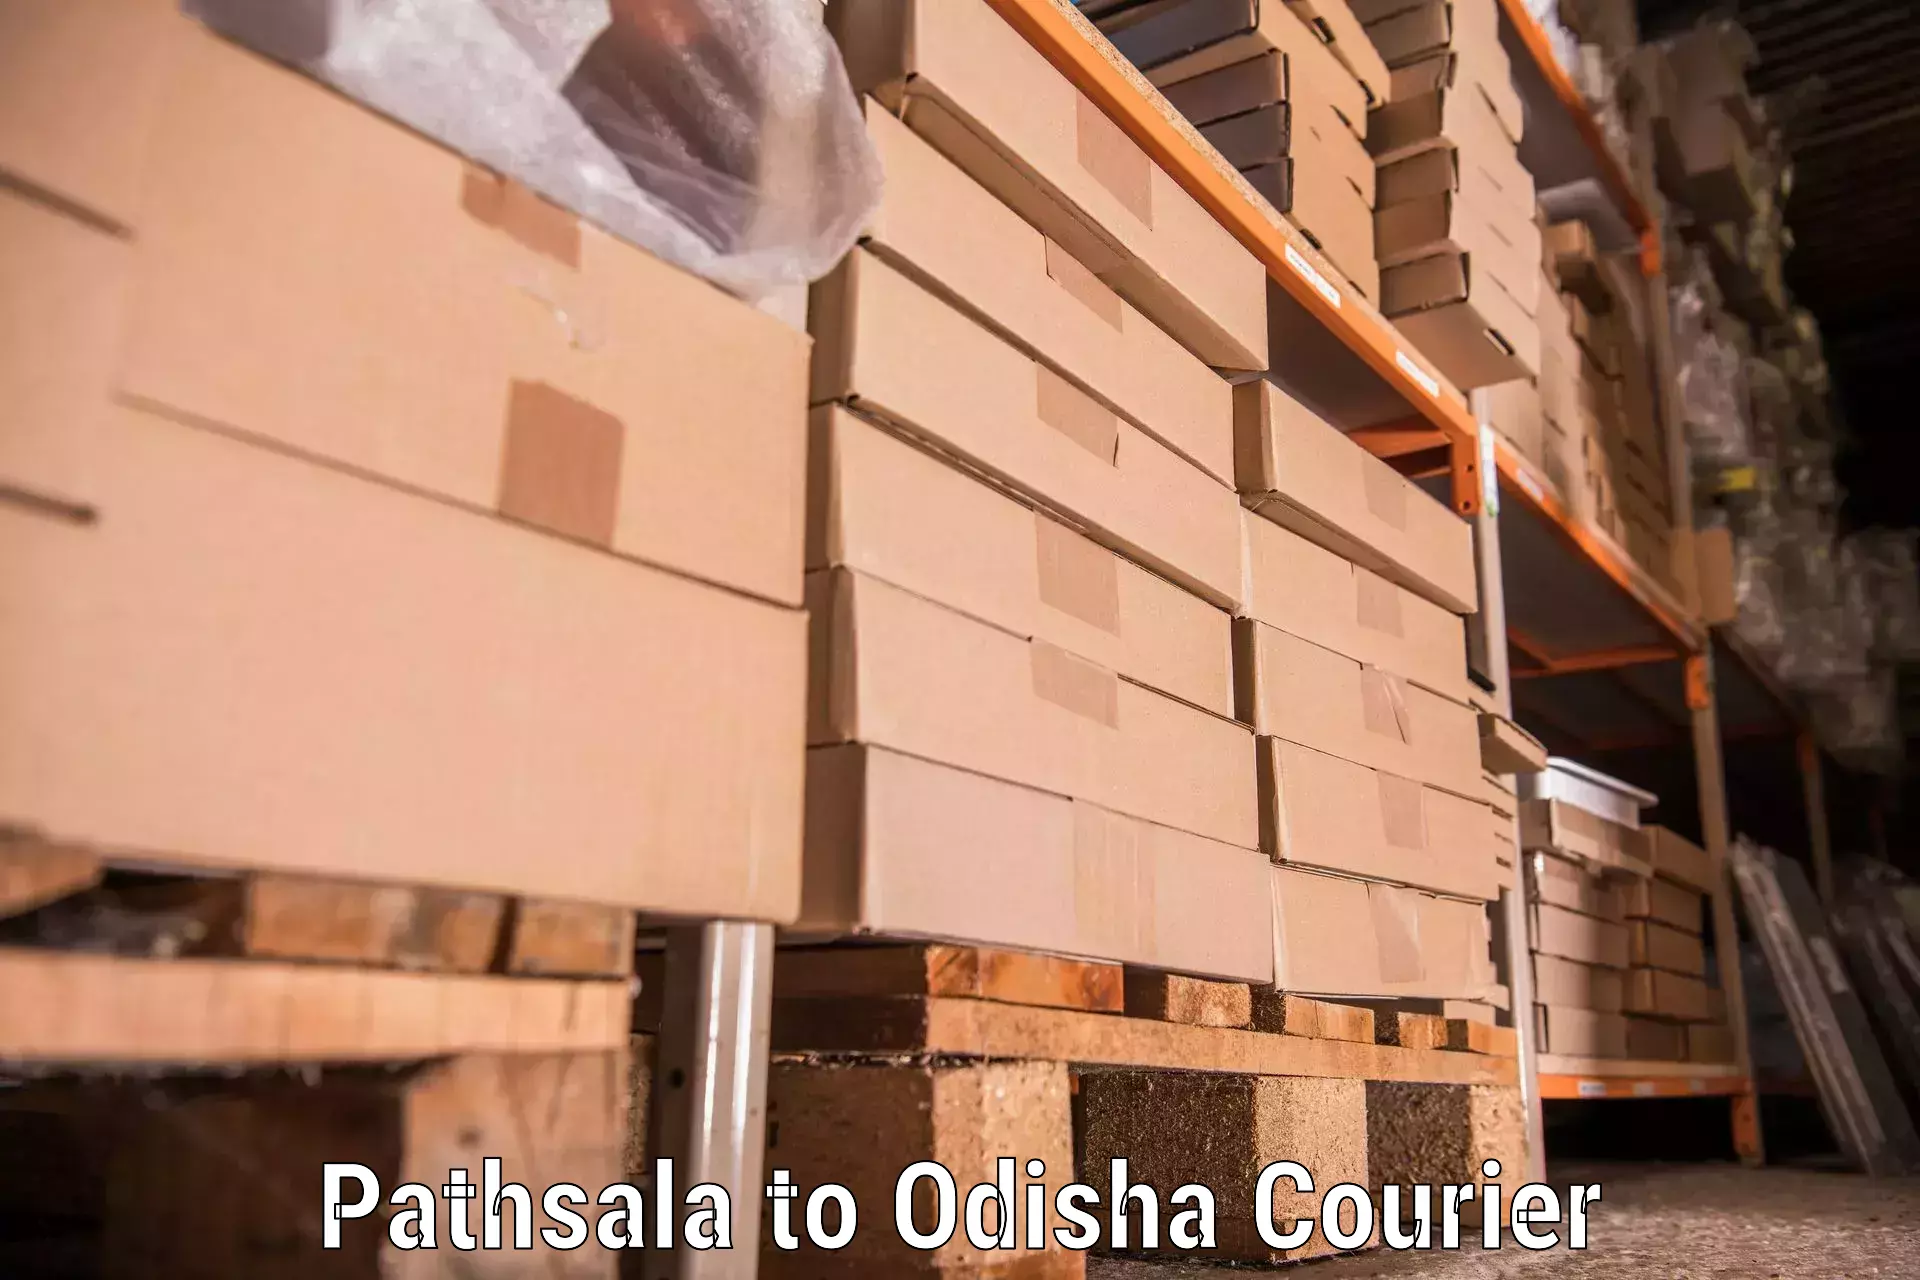 Furniture moving experts Pathsala to Kandhamal